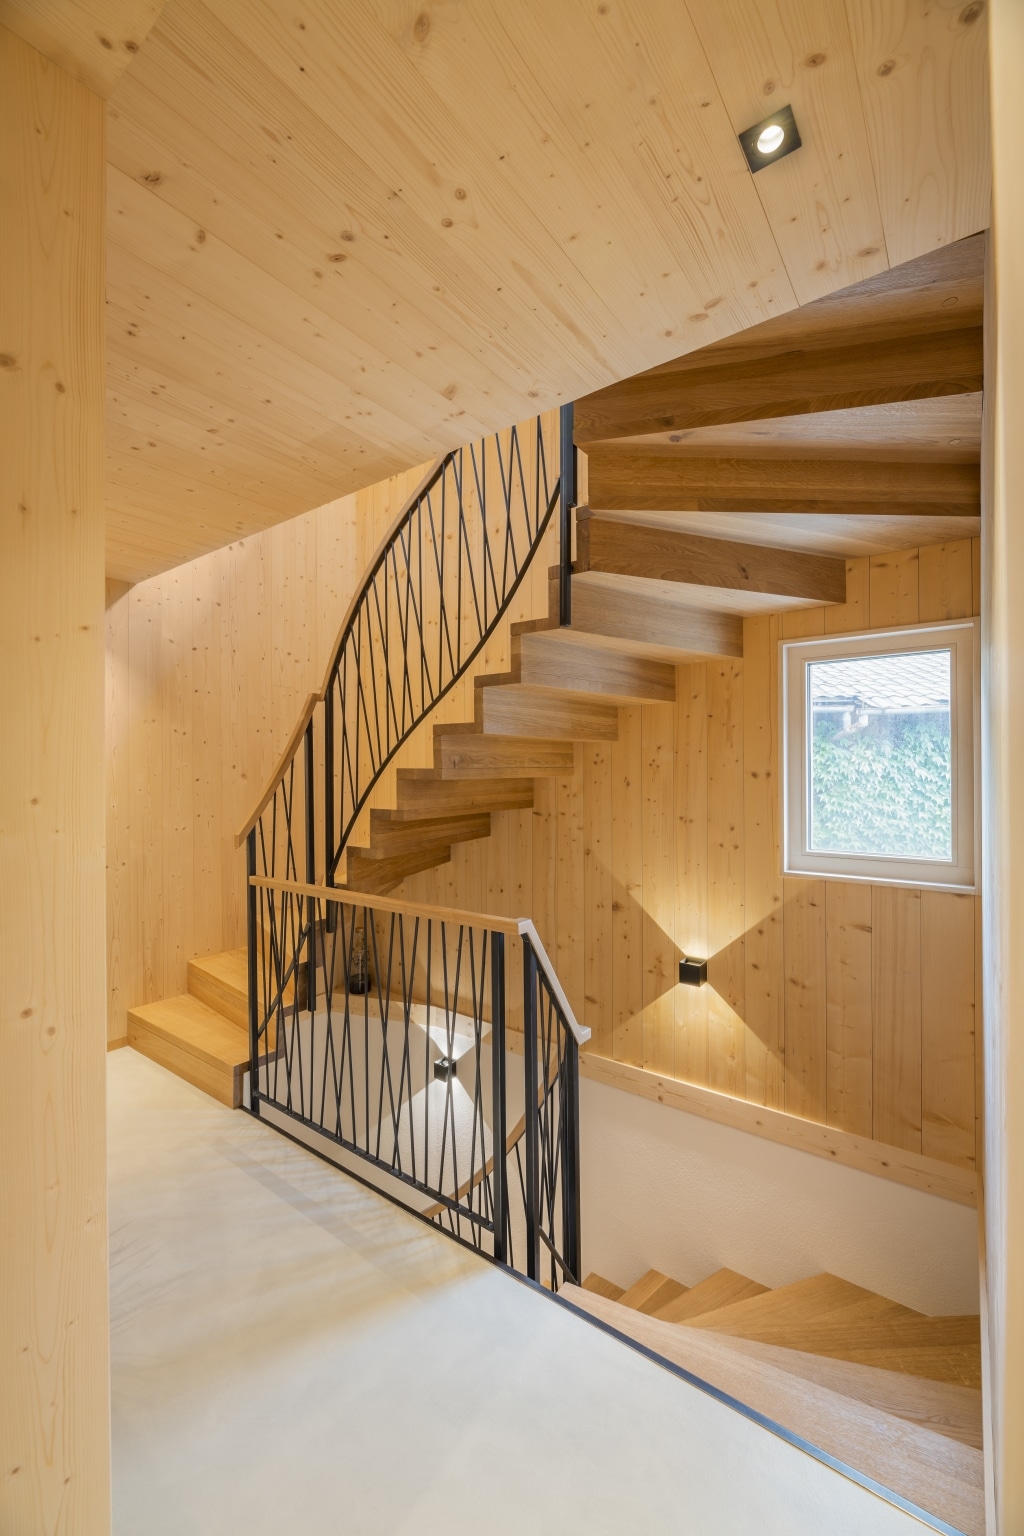 Corridoio con scala in legno